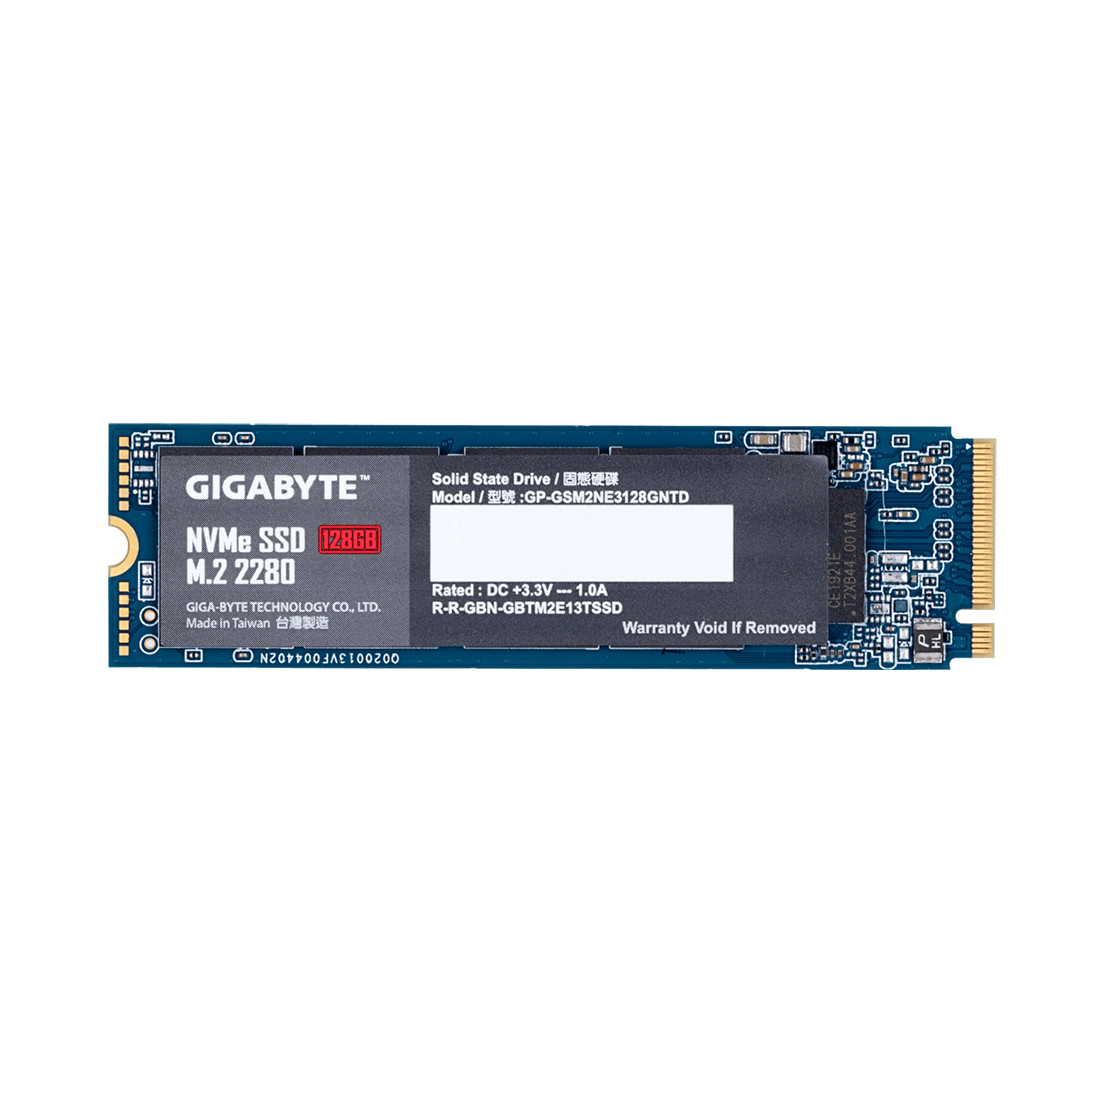 Твердотельный накопитель внутренний Gigabyte GP-GSM2NE3128GNTD 128GB M.2 PCI-E 3.0x4, фото 1